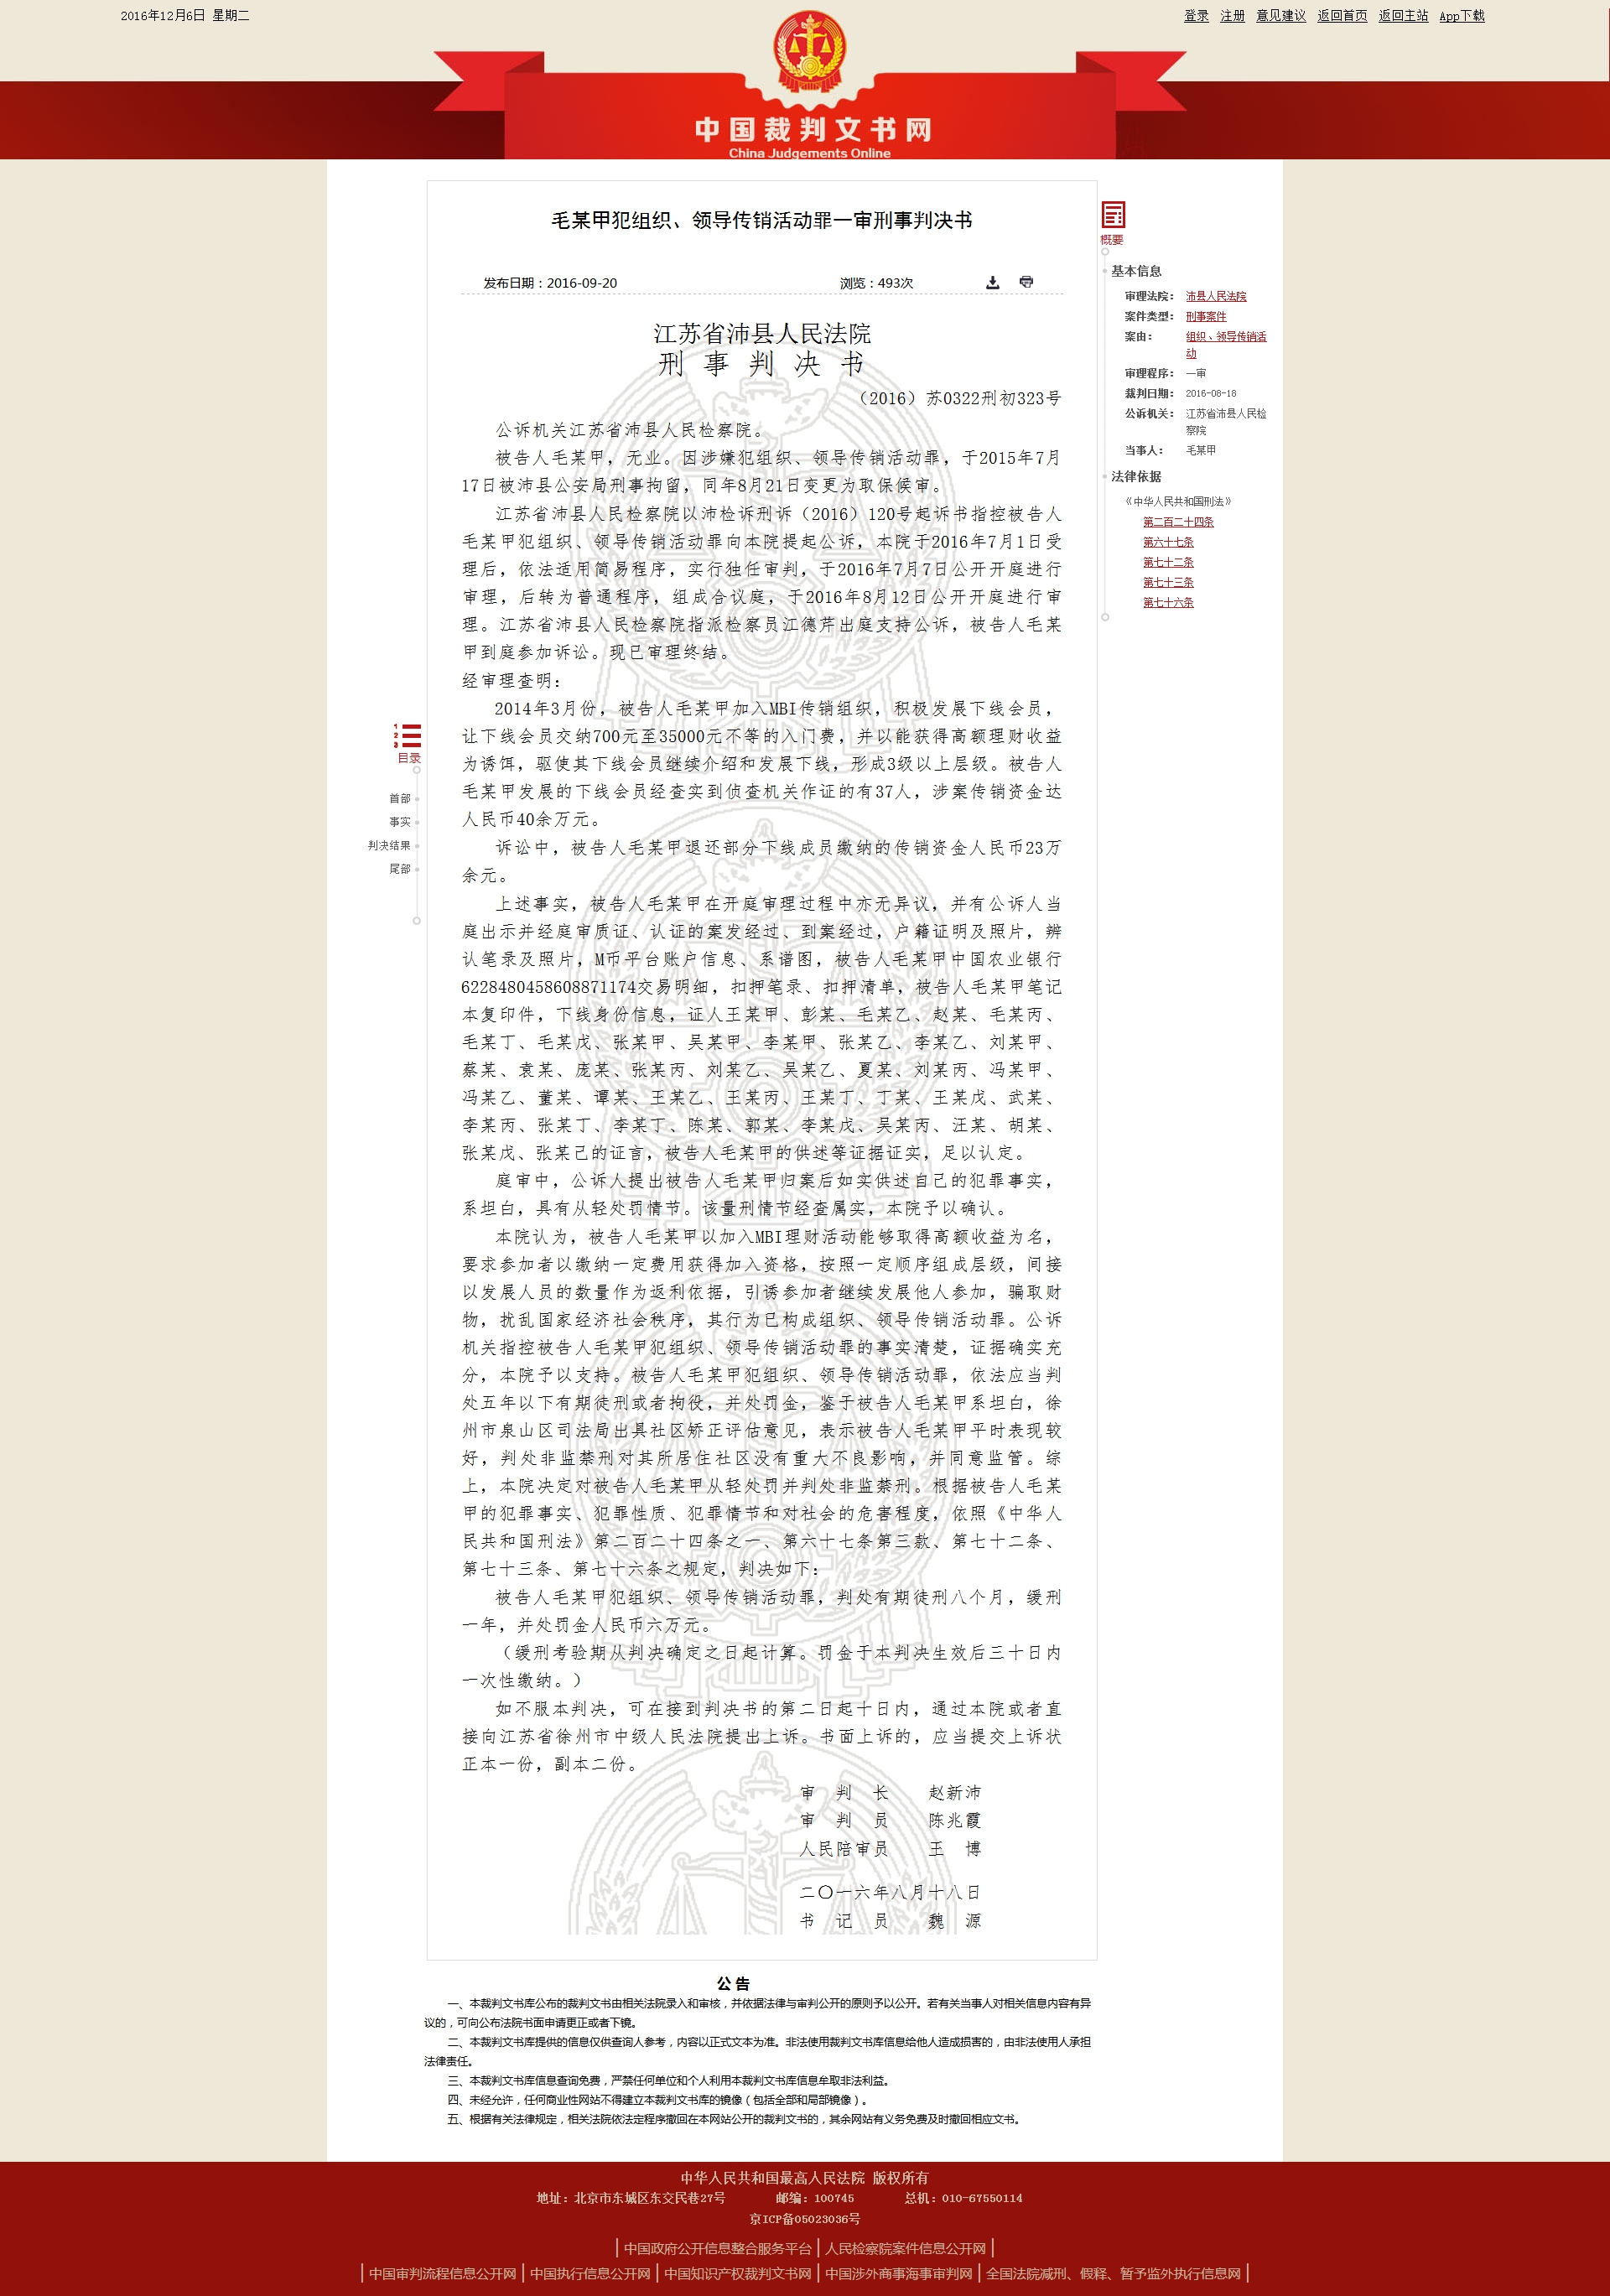 高院所屬中國裁判文書網，毛某甲加入MBI傳銷組織刑事判決書